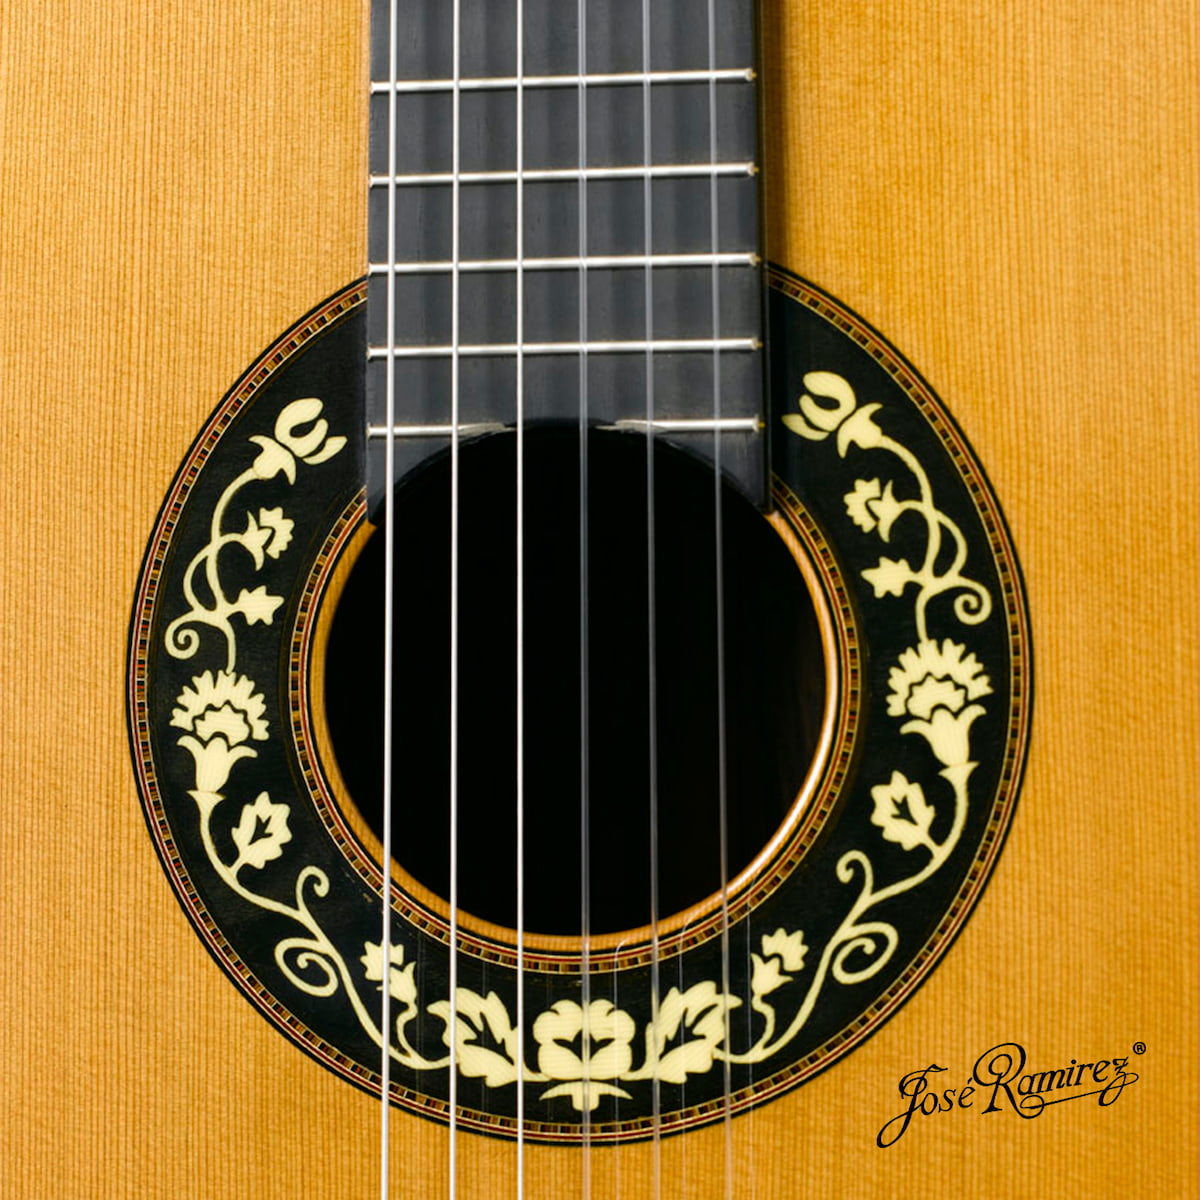 Boca de la guitarra Aniversario de Amalia Ramírez